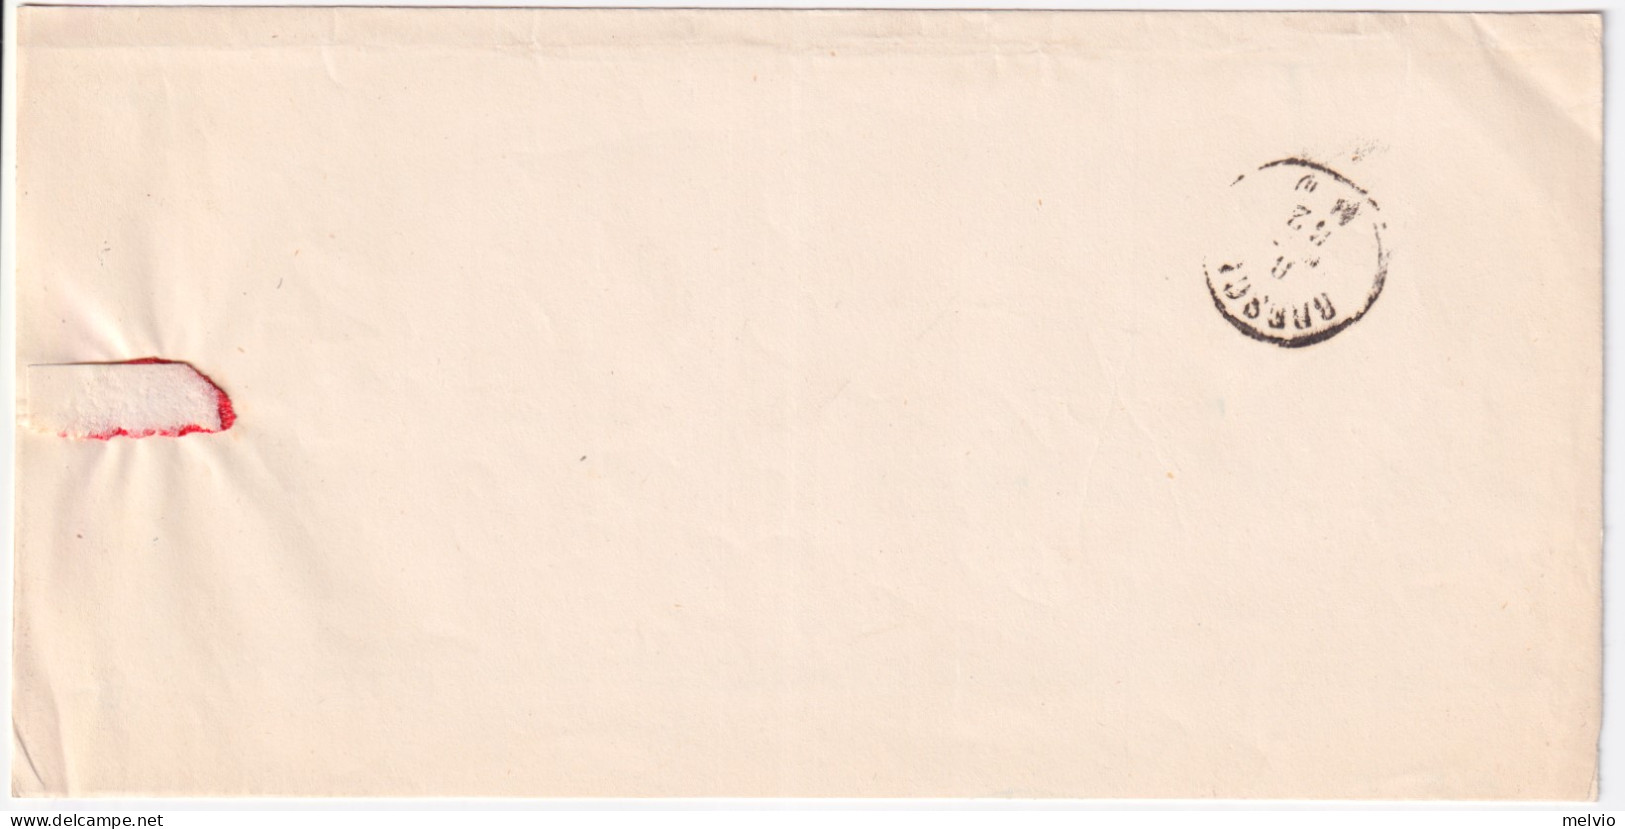 1862-Dello C.2 (7.5.62) Su Piego In Franchigia - Zonder Classificatie